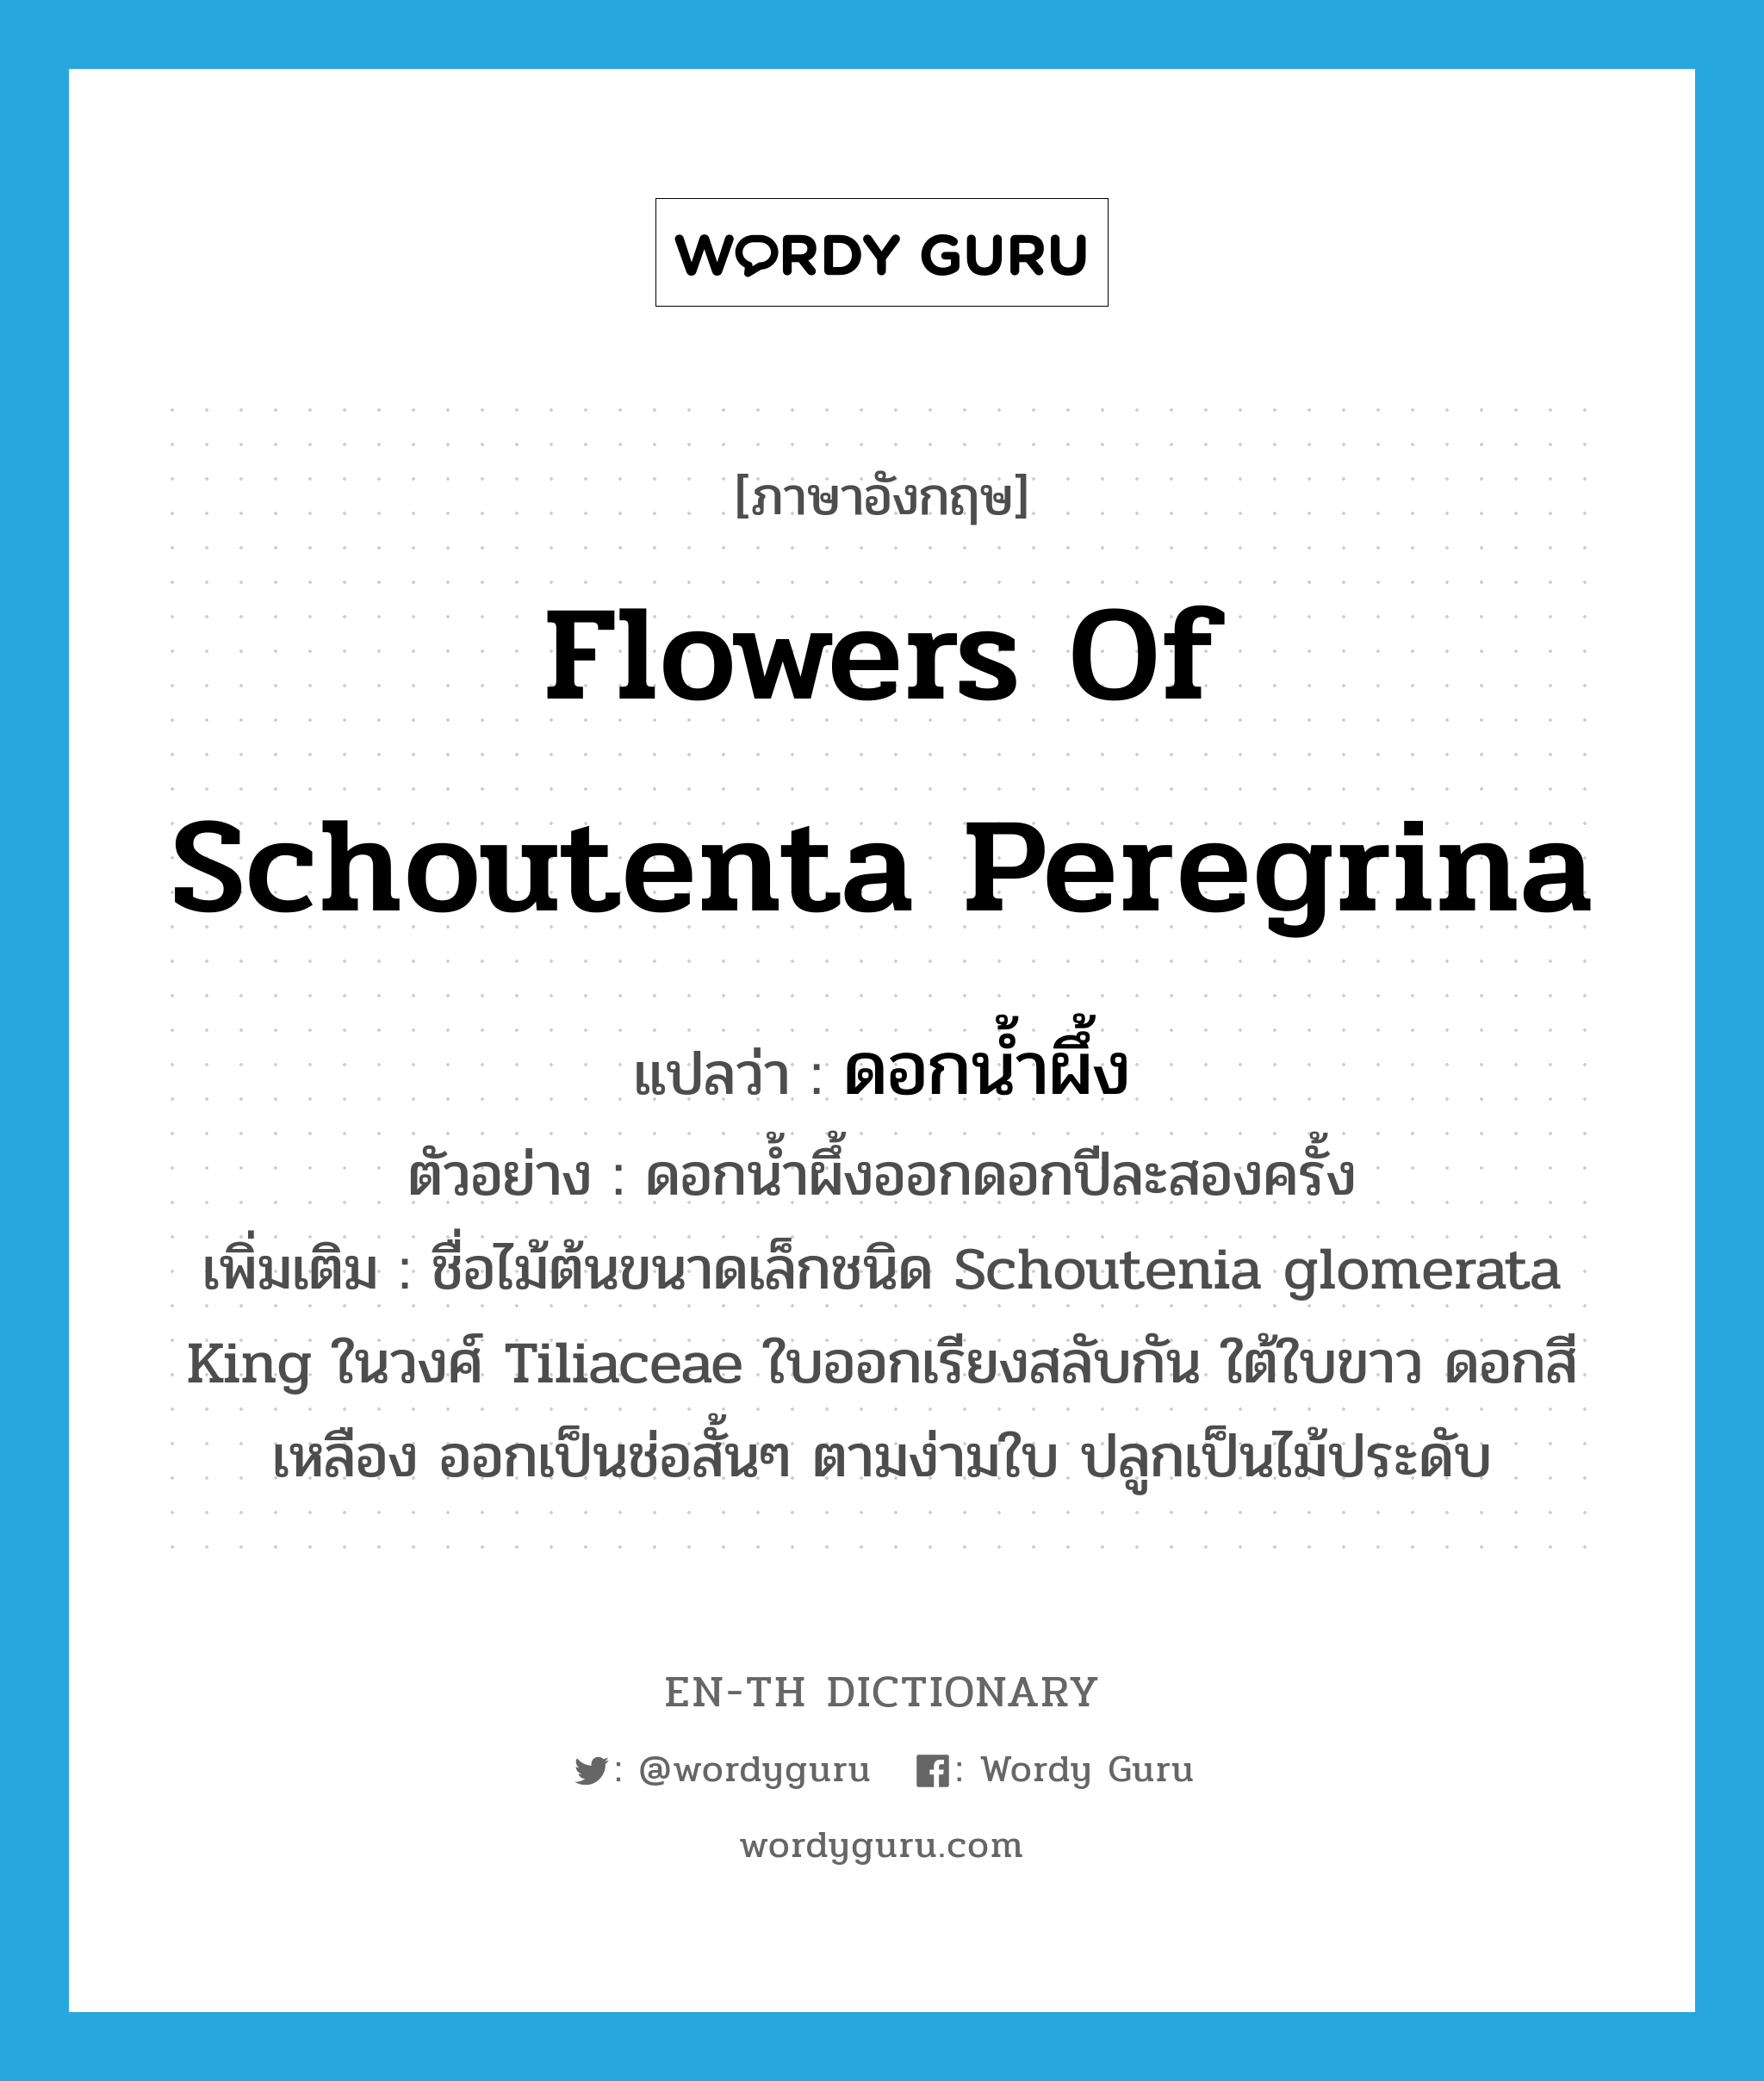 ดอกน้ำผึ้ง ภาษาอังกฤษ?, คำศัพท์ภาษาอังกฤษ ดอกน้ำผึ้ง แปลว่า flowers of Schoutenta peregrina ประเภท N ตัวอย่าง ดอกน้ำผึ้งออกดอกปีละสองครั้ง เพิ่มเติม ชื่อไม้ต้นขนาดเล็กชนิด Schoutenia glomerata King ในวงศ์ Tiliaceae ใบออกเรียงสลับกัน ใต้ใบขาว ดอกสีเหลือง ออกเป็นช่อสั้นๆ ตามง่ามใบ ปลูกเป็นไม้ประดับ หมวด N